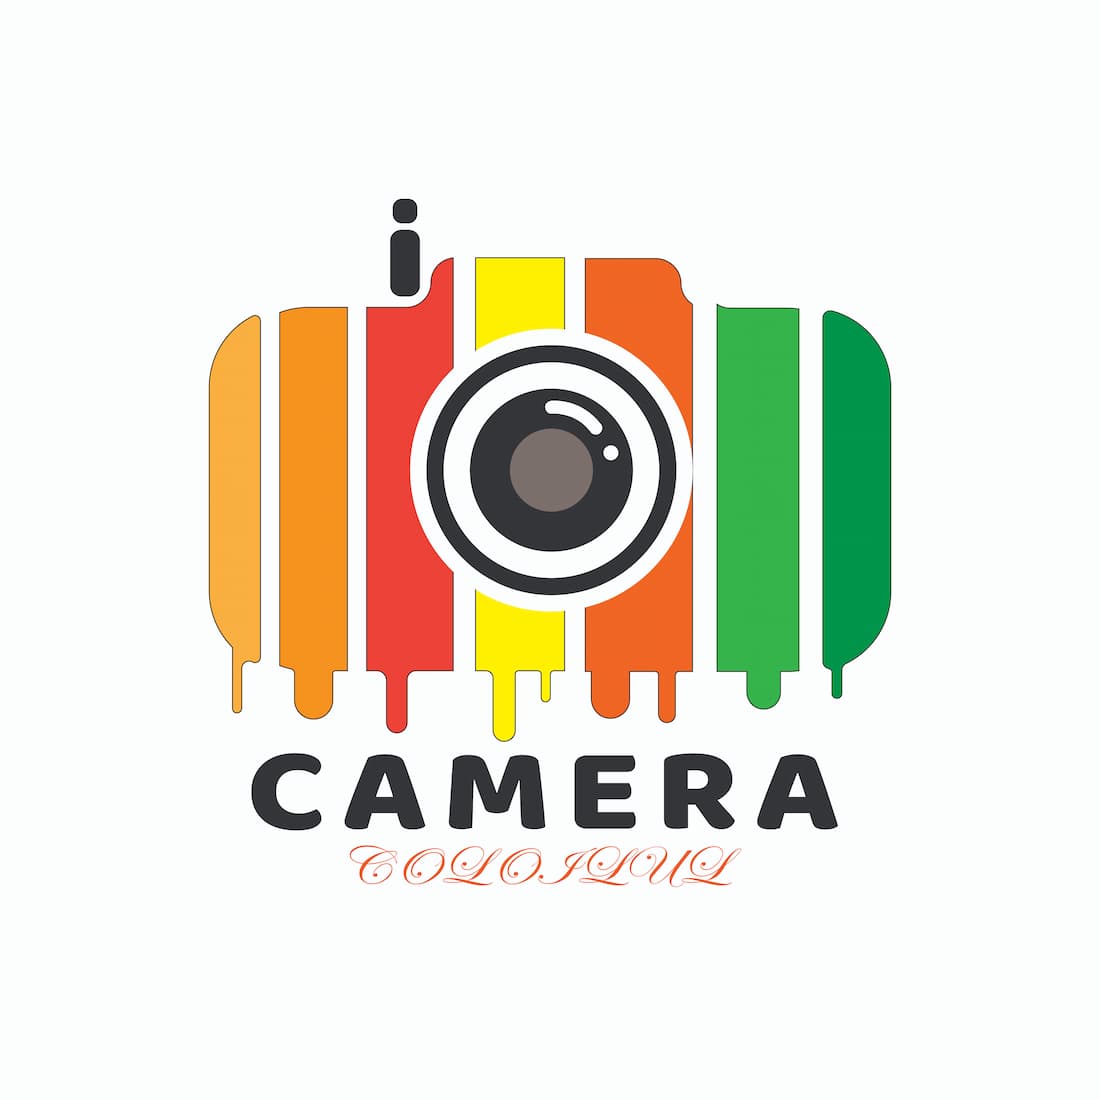 Camera logo preview image.